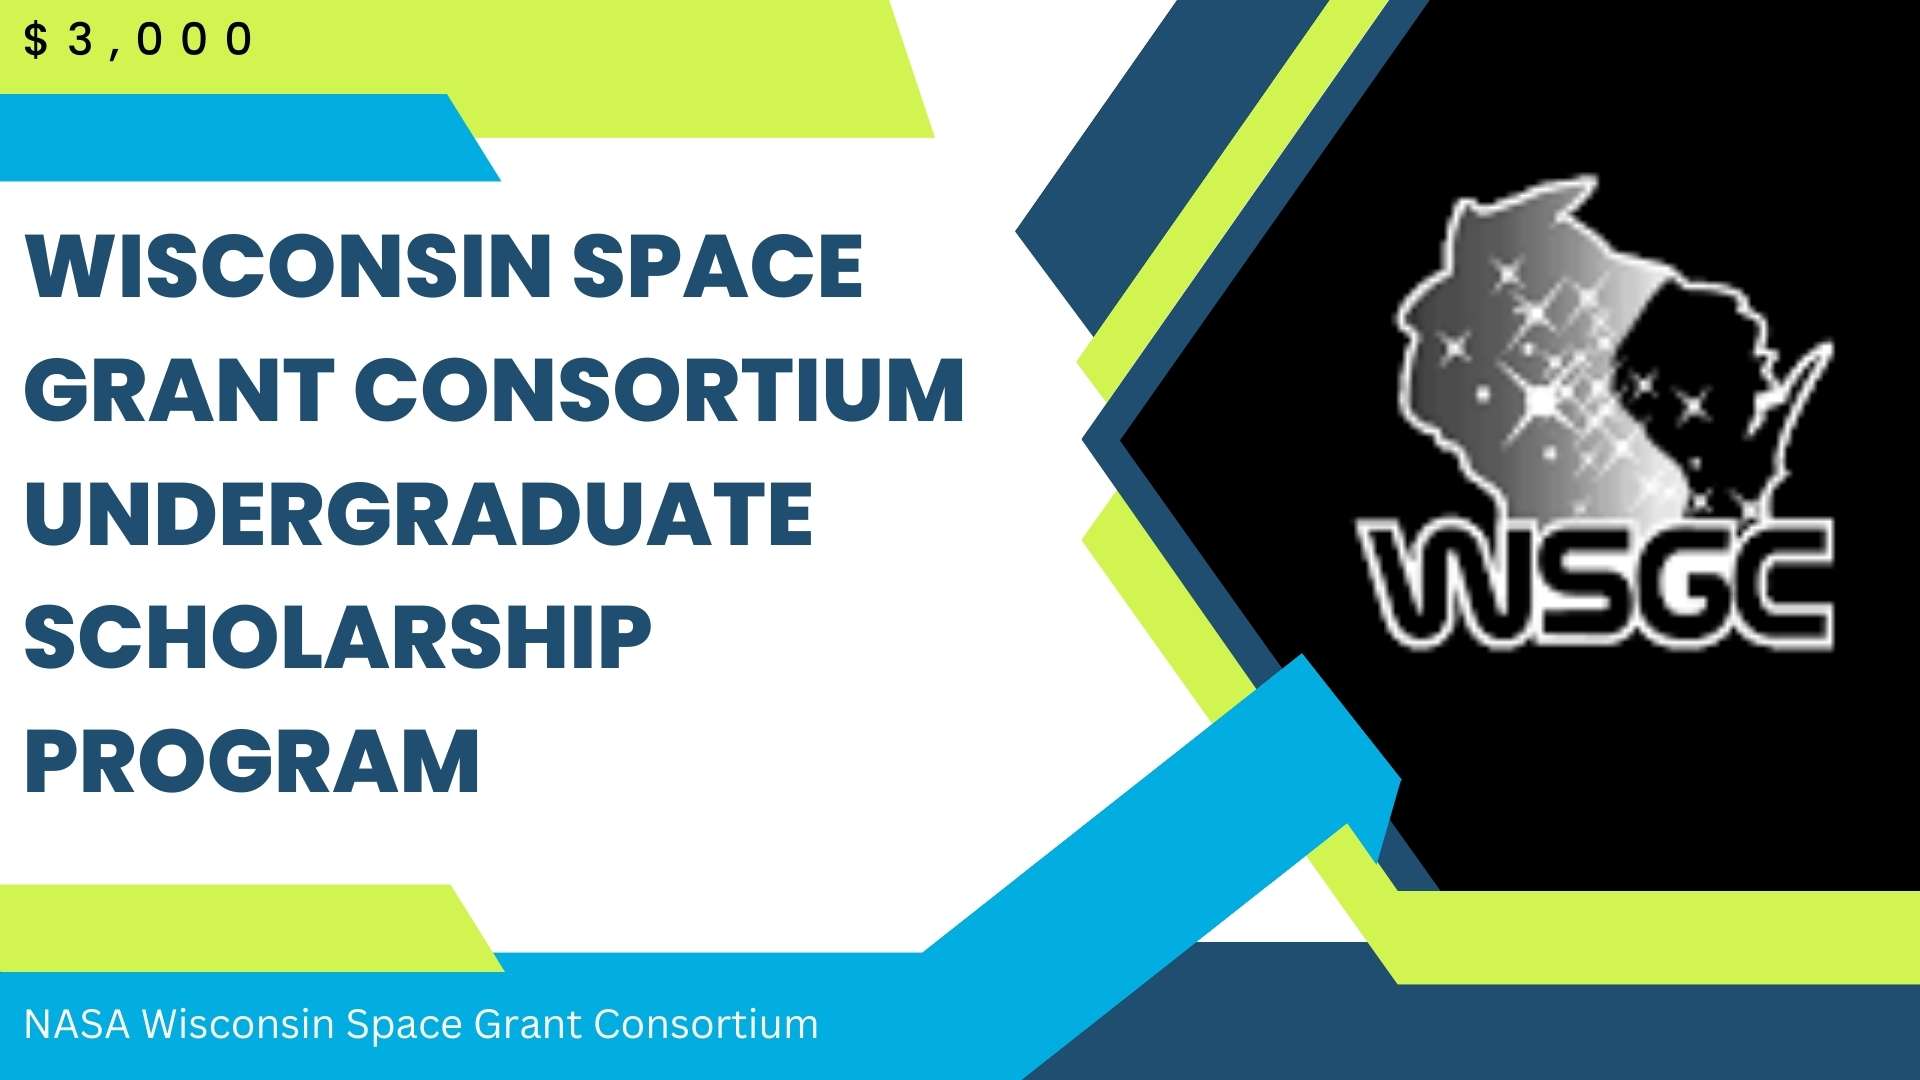 Wisconsin Space Grant Consortium Undergraduate Scholarship Program